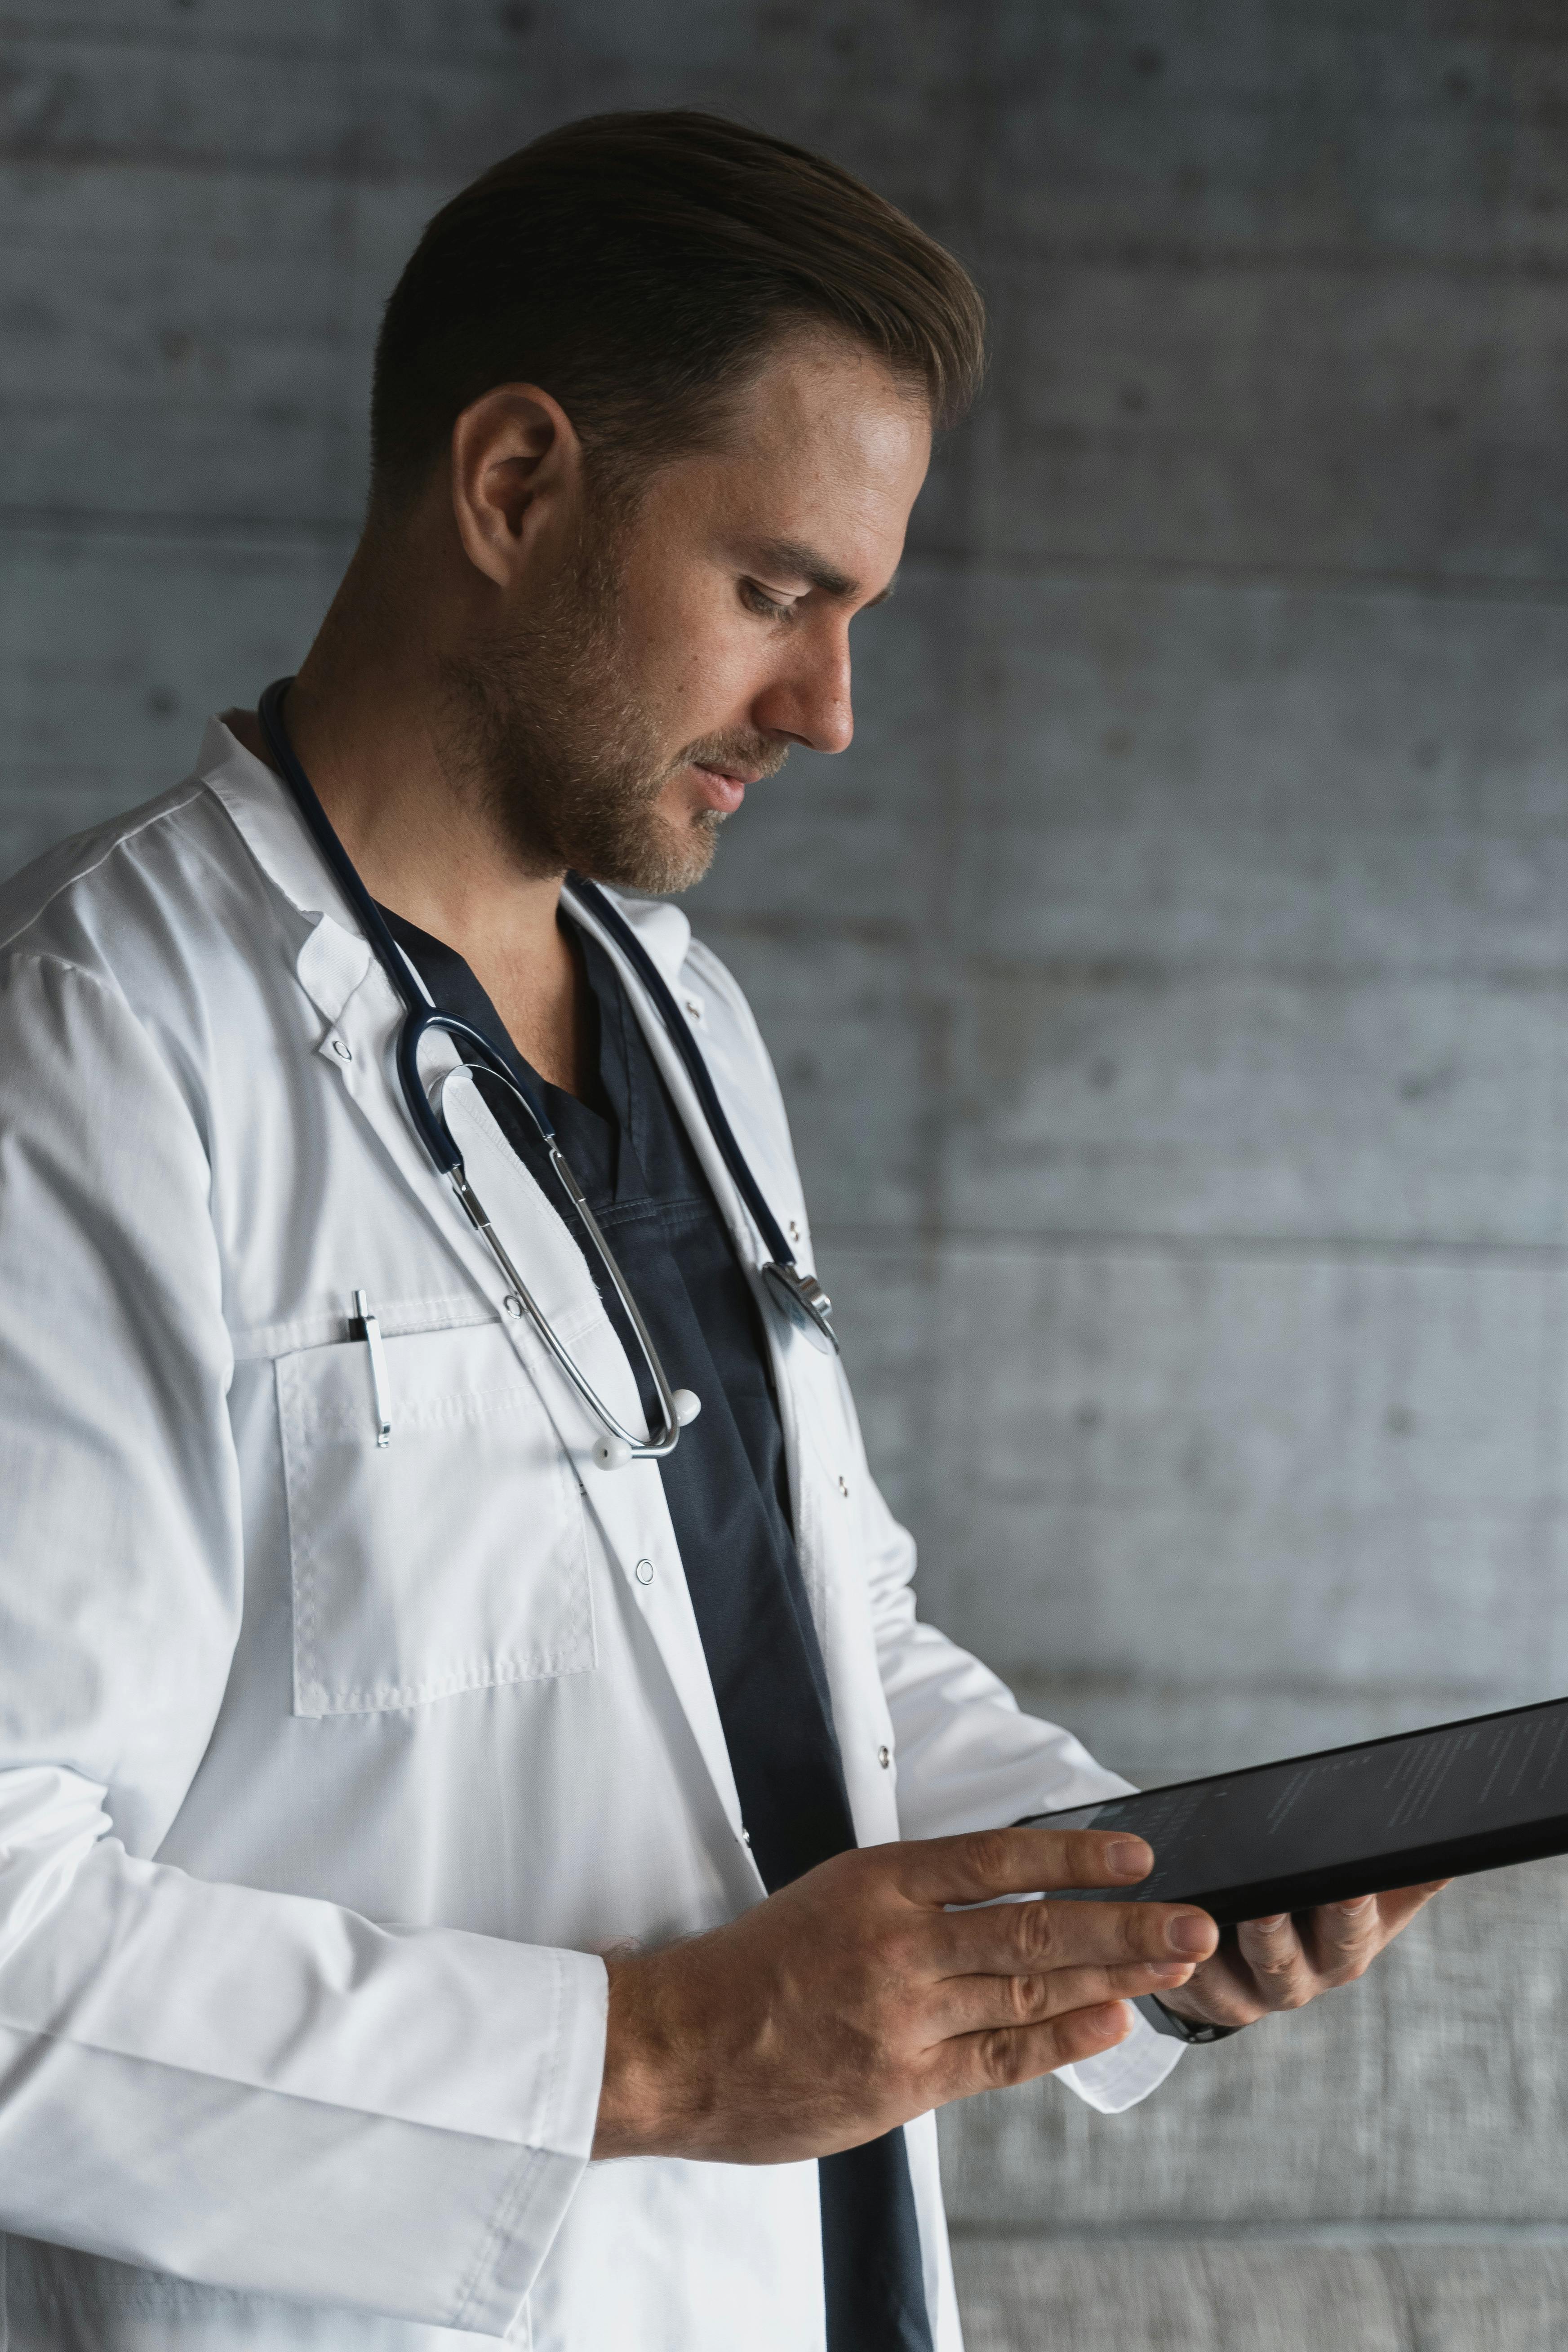 Un médecin en blouse blanche lisant des documents | Source : Pexels